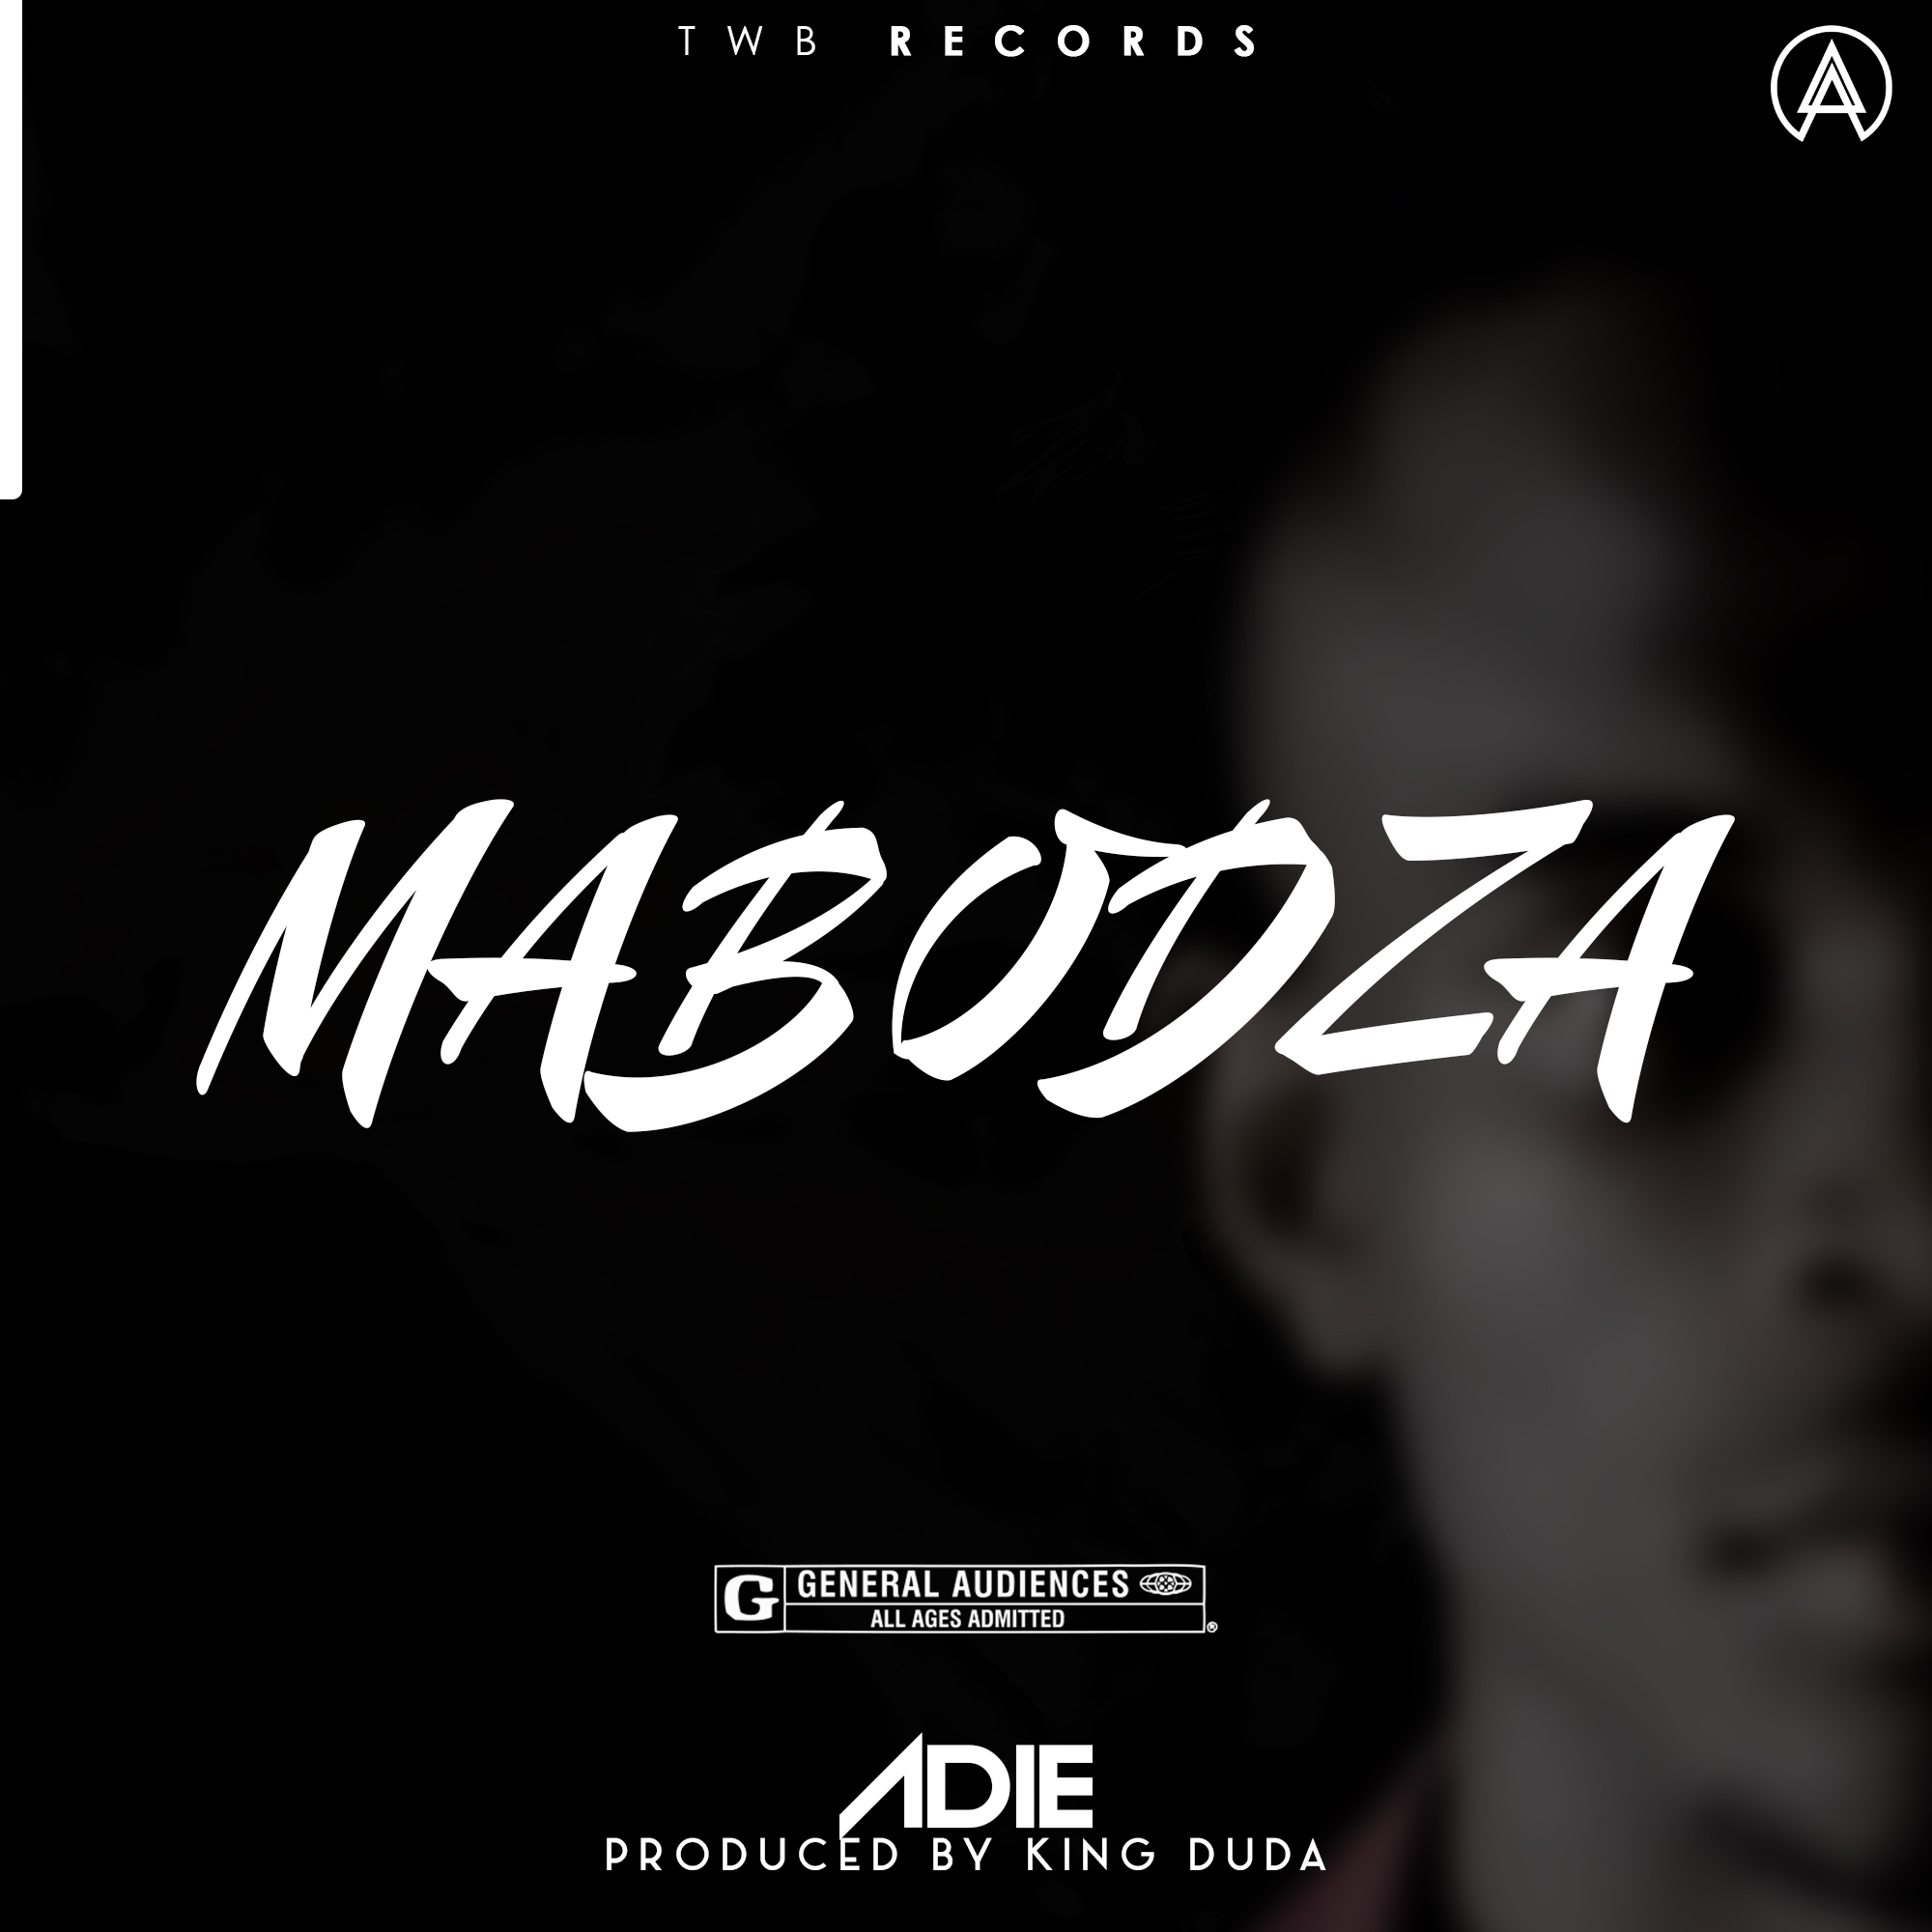 Adie-Mabodza-Prod-by-King-Duda-x-Adie